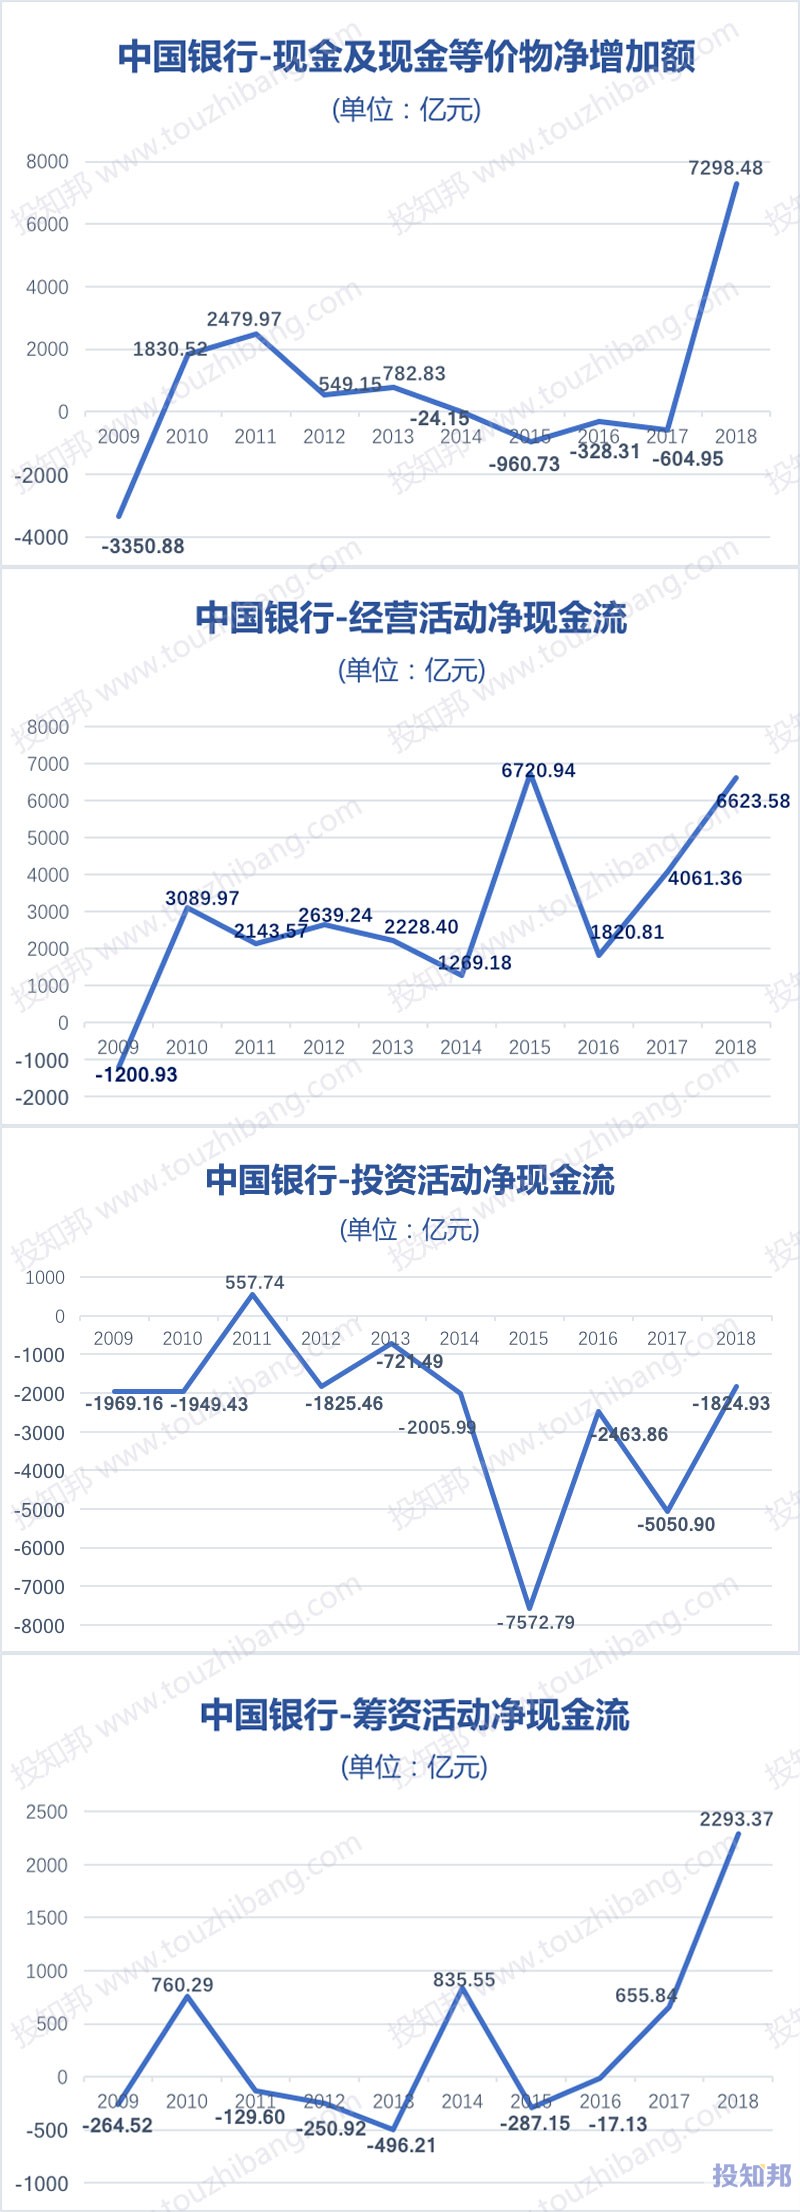 图解中国银行(601988)财报数据(2009年～2019年Q3)